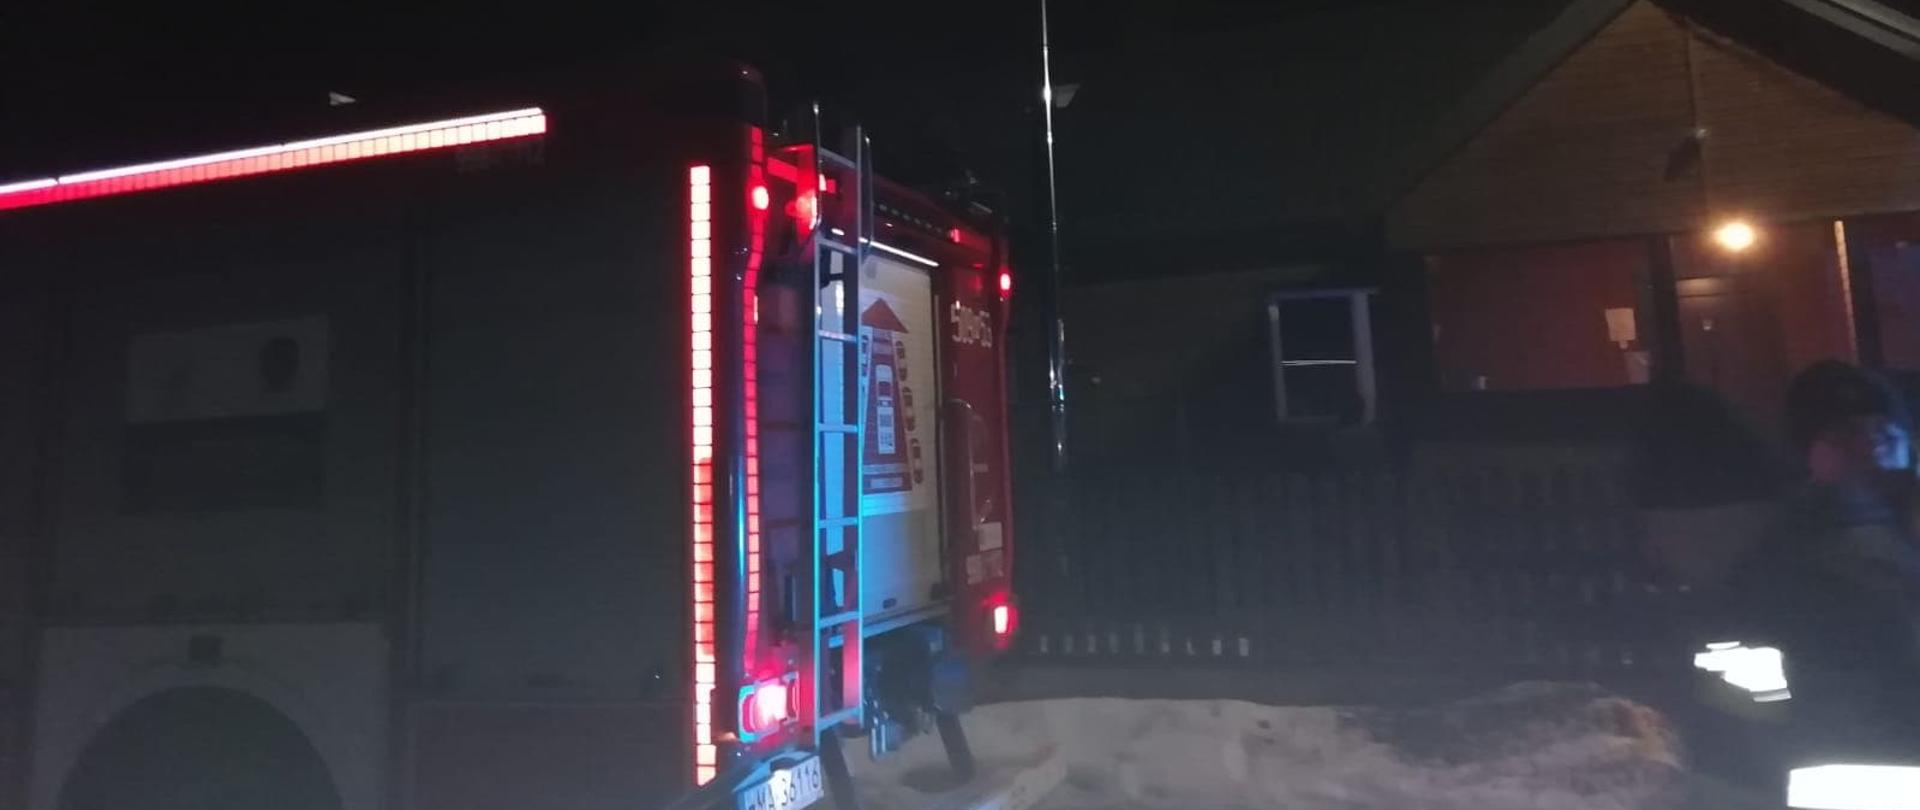 Samochód strażacki stoi zaparkowany przed drewnianym domem jednorodzinnym . Pora nocna.